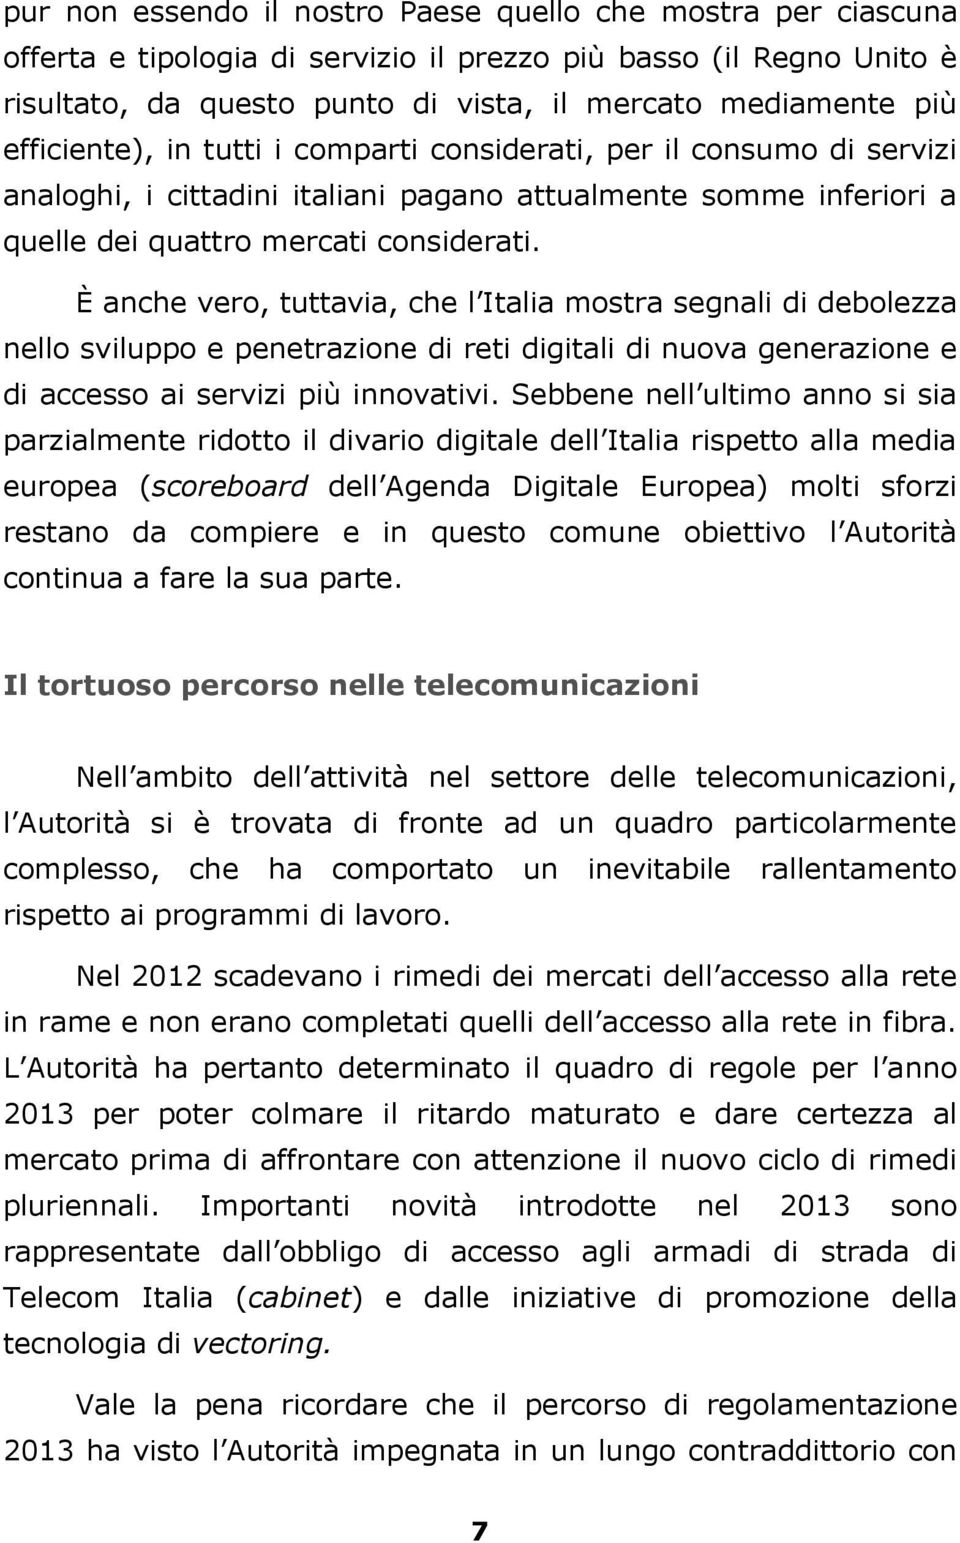 È anche vero, tuttavia, che l Italia mostra segnali di debolezza nello sviluppo e penetrazione di reti digitali di nuova generazione e di accesso ai servizi più innovativi.